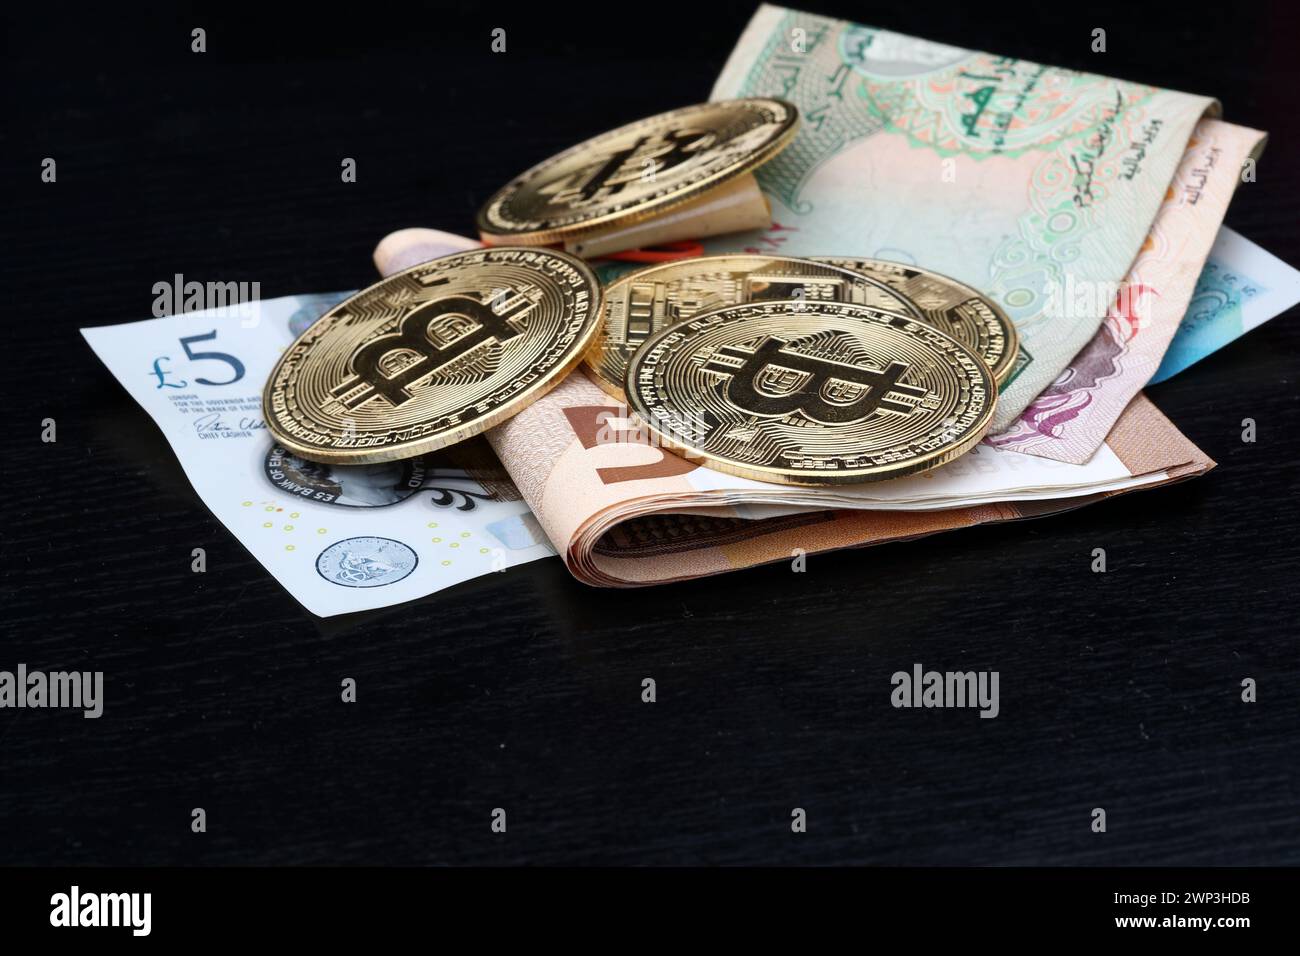 Symbolbild:  diverse Bitcoins auf Geldscheinen: Pfund, Euro und Dirham - die Alternative für Weltwährungen? - Der Bitcoin steht hoch im Kurs. Selbst F Stock Photo